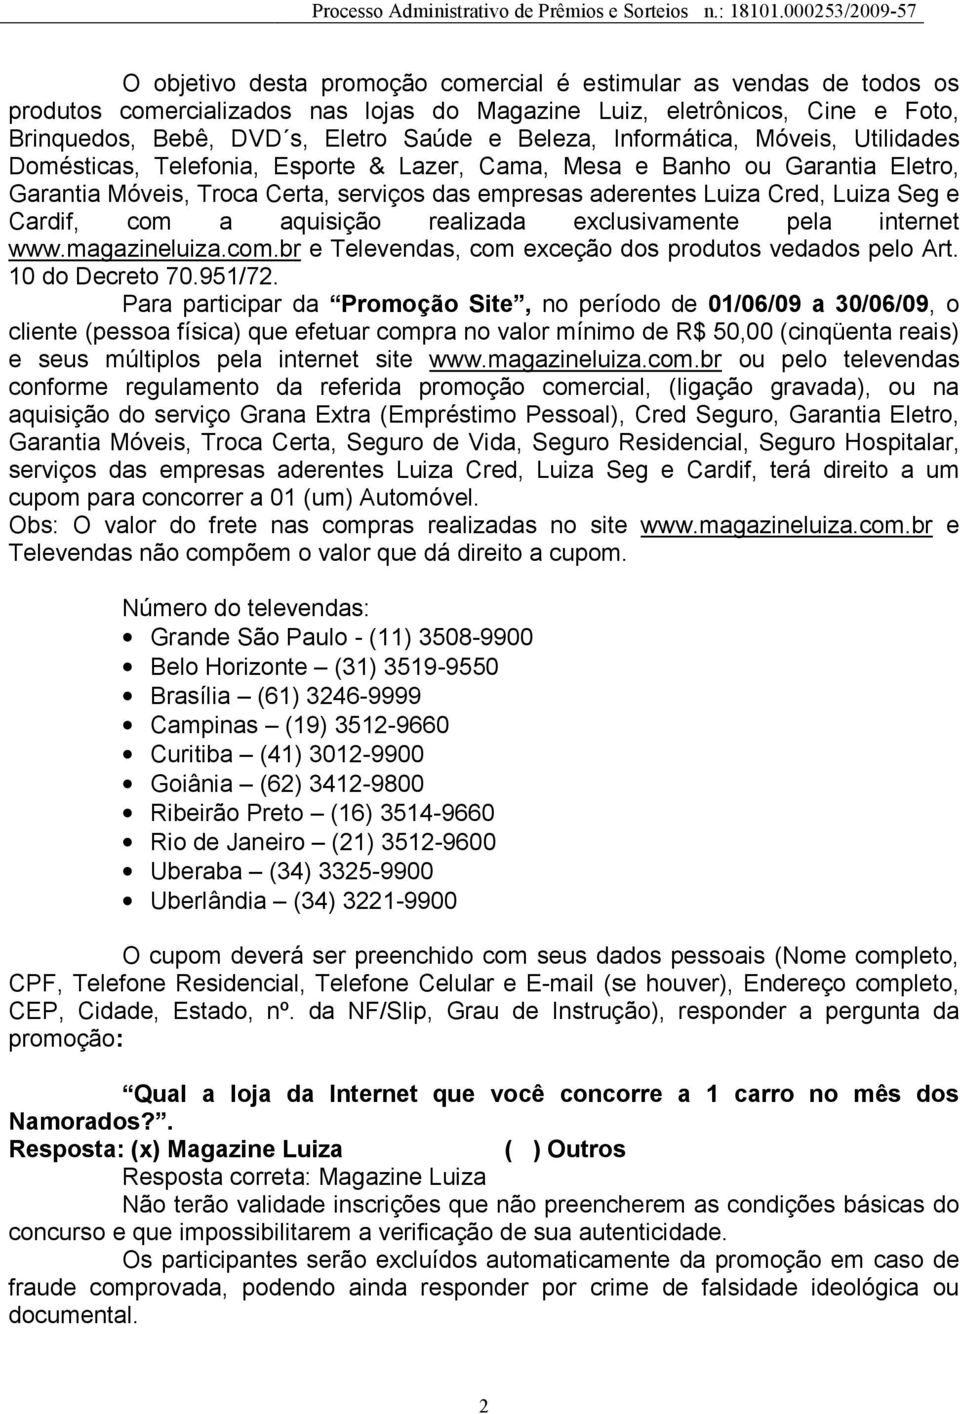 Cardif, com a aquisição realizada exclusivamente pela internet www.magazineluiza.com.br e Televendas, com exceção dos produtos vedados pelo Art. 10 do Decreto 70.951/72.